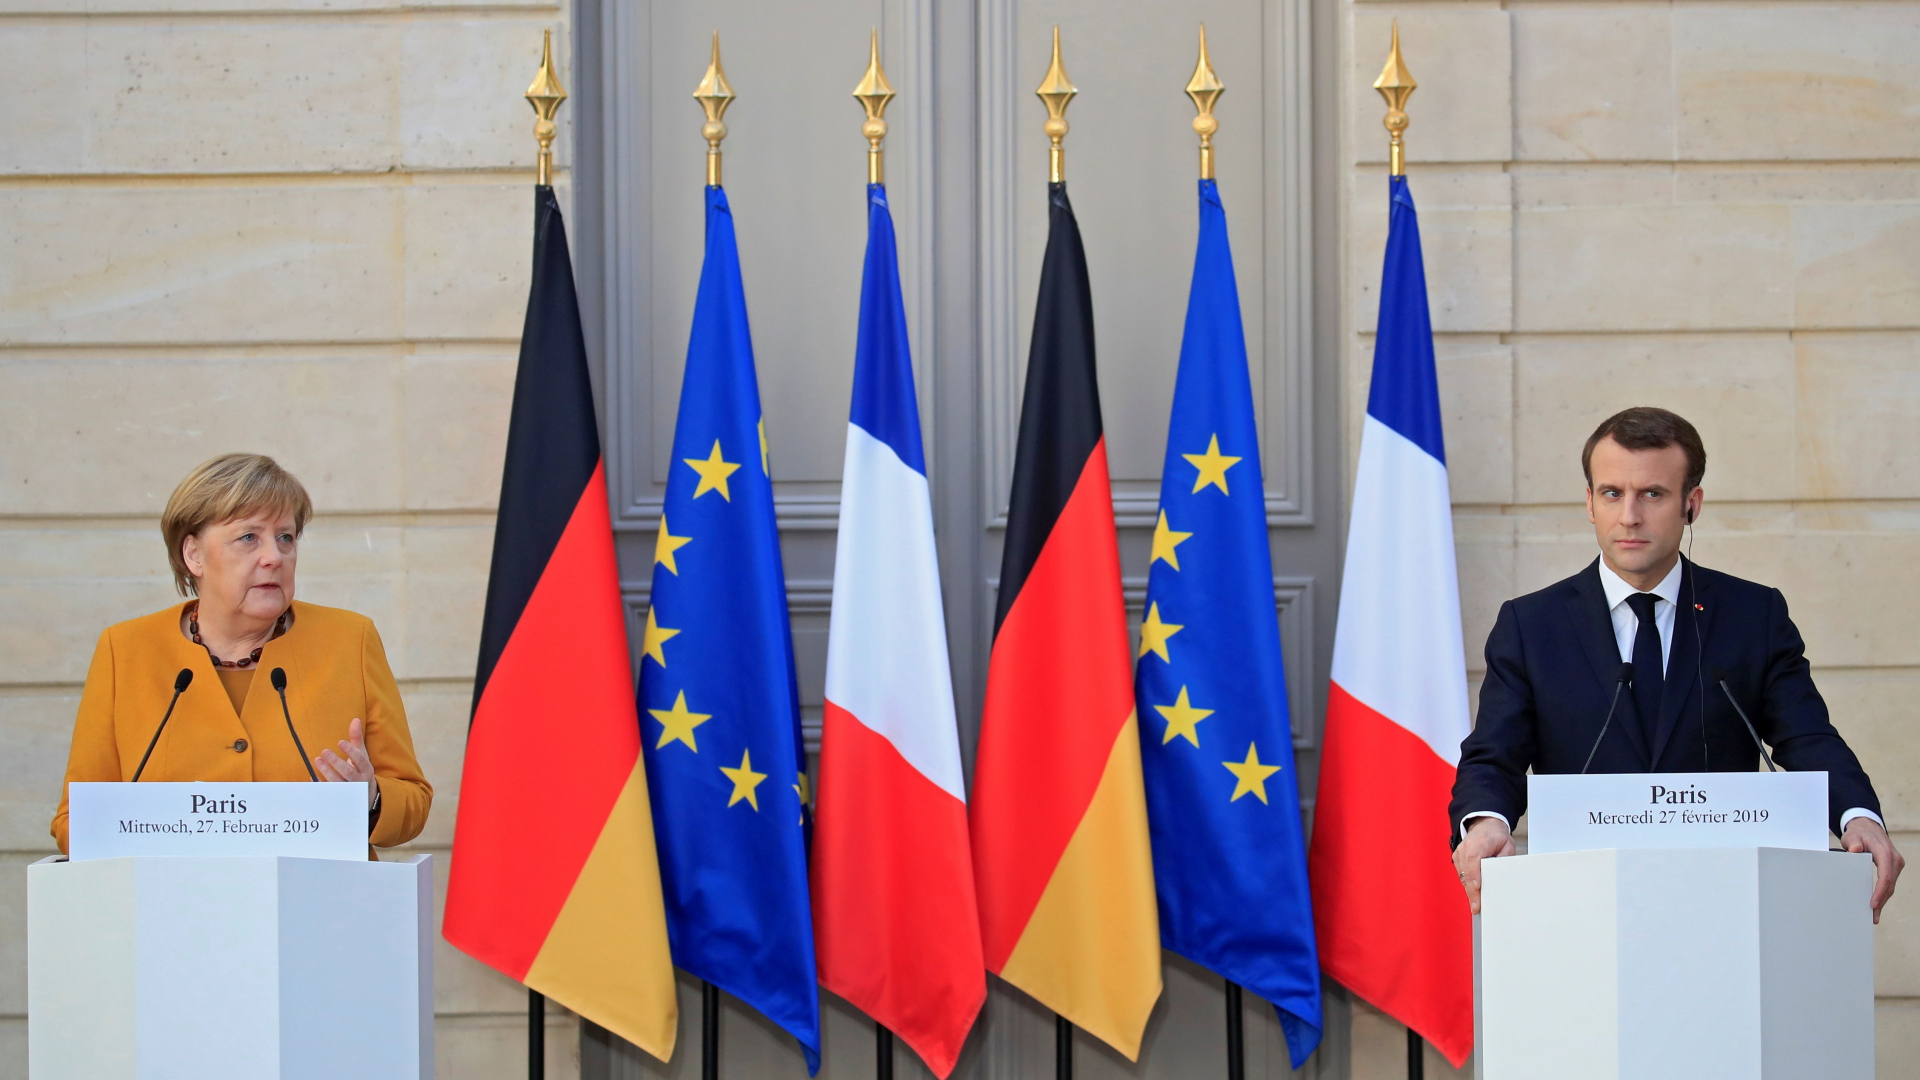 Bundeskanzlerin Angela Merkel und Frankreichs Präsident Emmanuel Macron in Paris | GONZALO FUENTES/POOL/EPA-EFE/REX